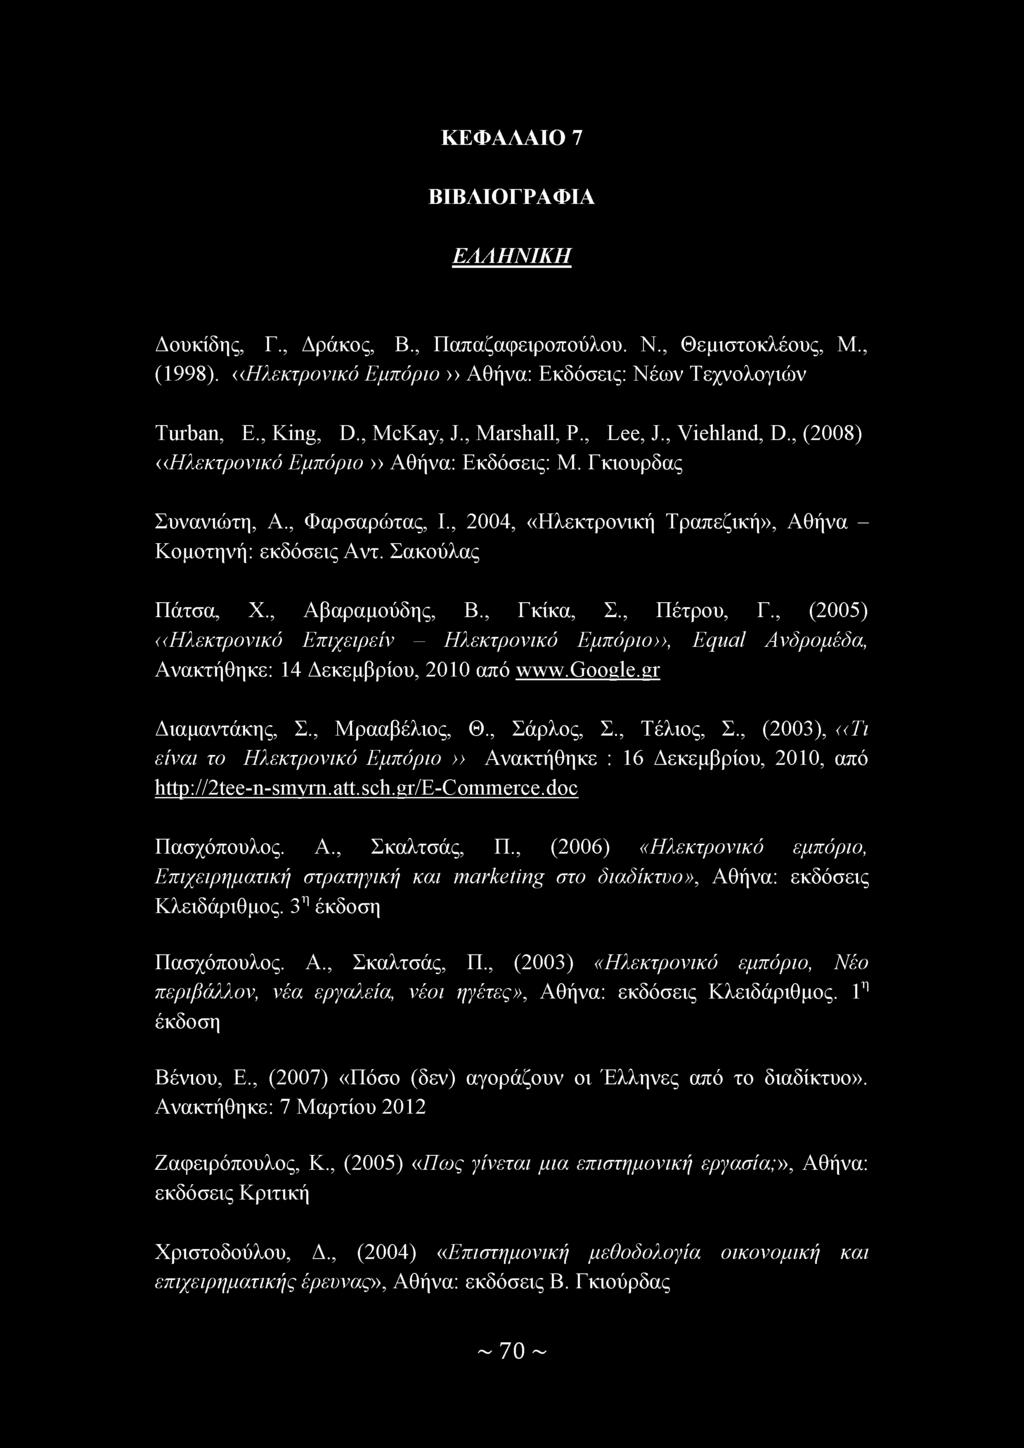 Σακούλας Πάτσα, Χ., Αβαραμούδης, Β., Γκίκα, Σ., Πέτρου, Γ., (2005) ((Ηλεκτρονικό Επιχειρείν - Ηλεκτρονικό Εμπόριο>>, Equal Ανδρομέδα, Ανακτήθηκε: 14 Δεκεμβρίου, 2010 από www.google.gr Διαμαντάκης, Σ.